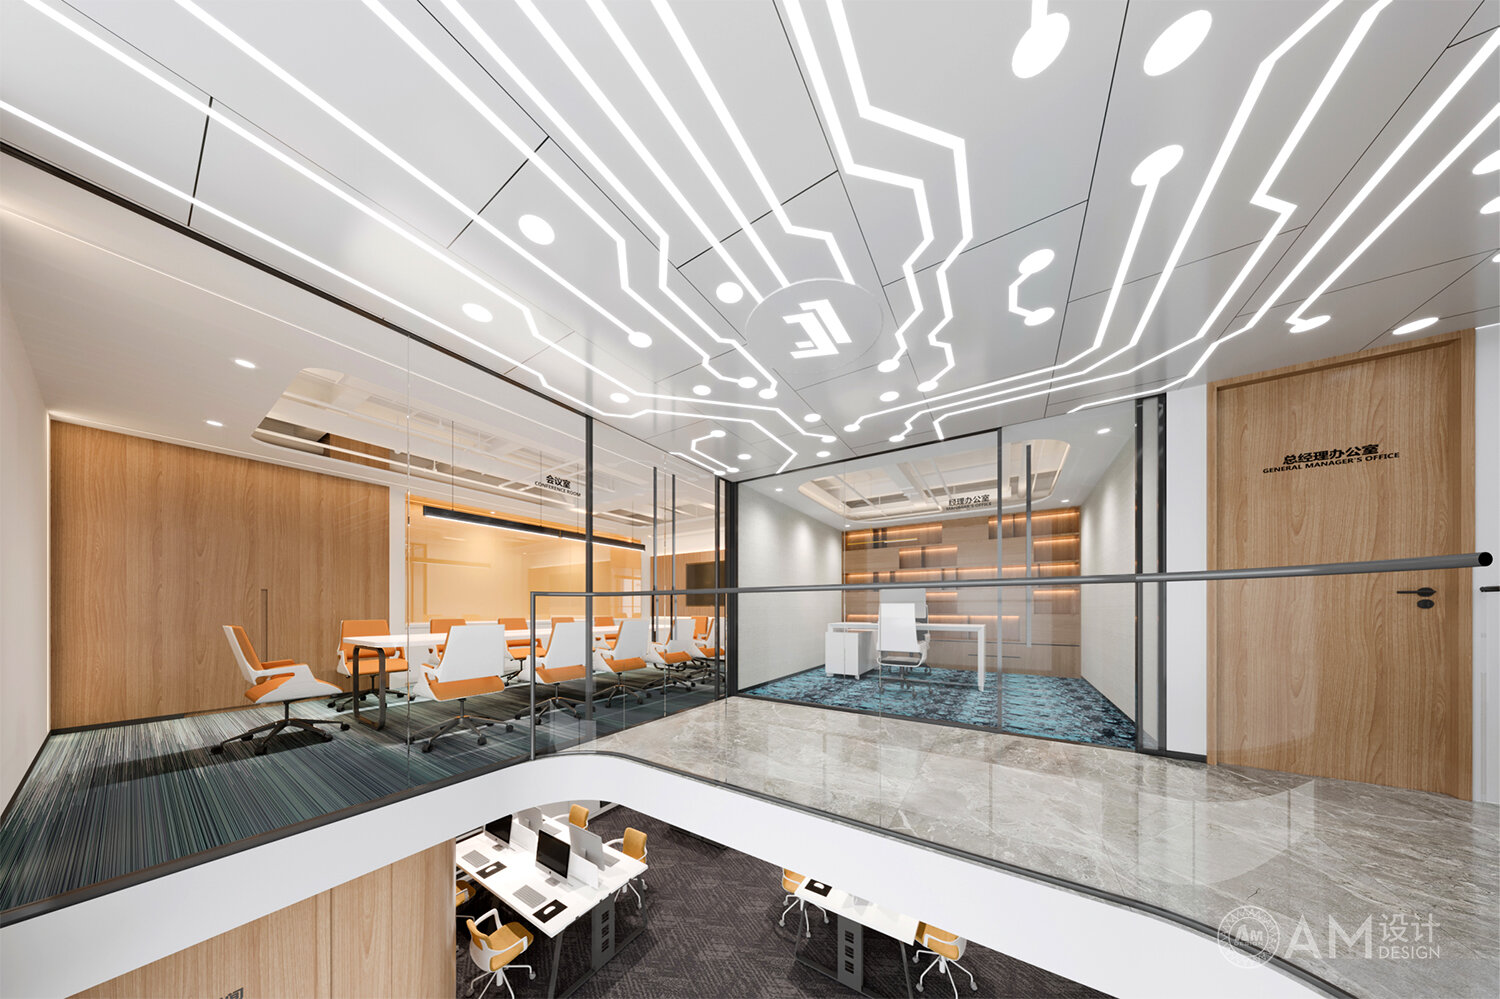 Am design | Jianling Siyu loft office design